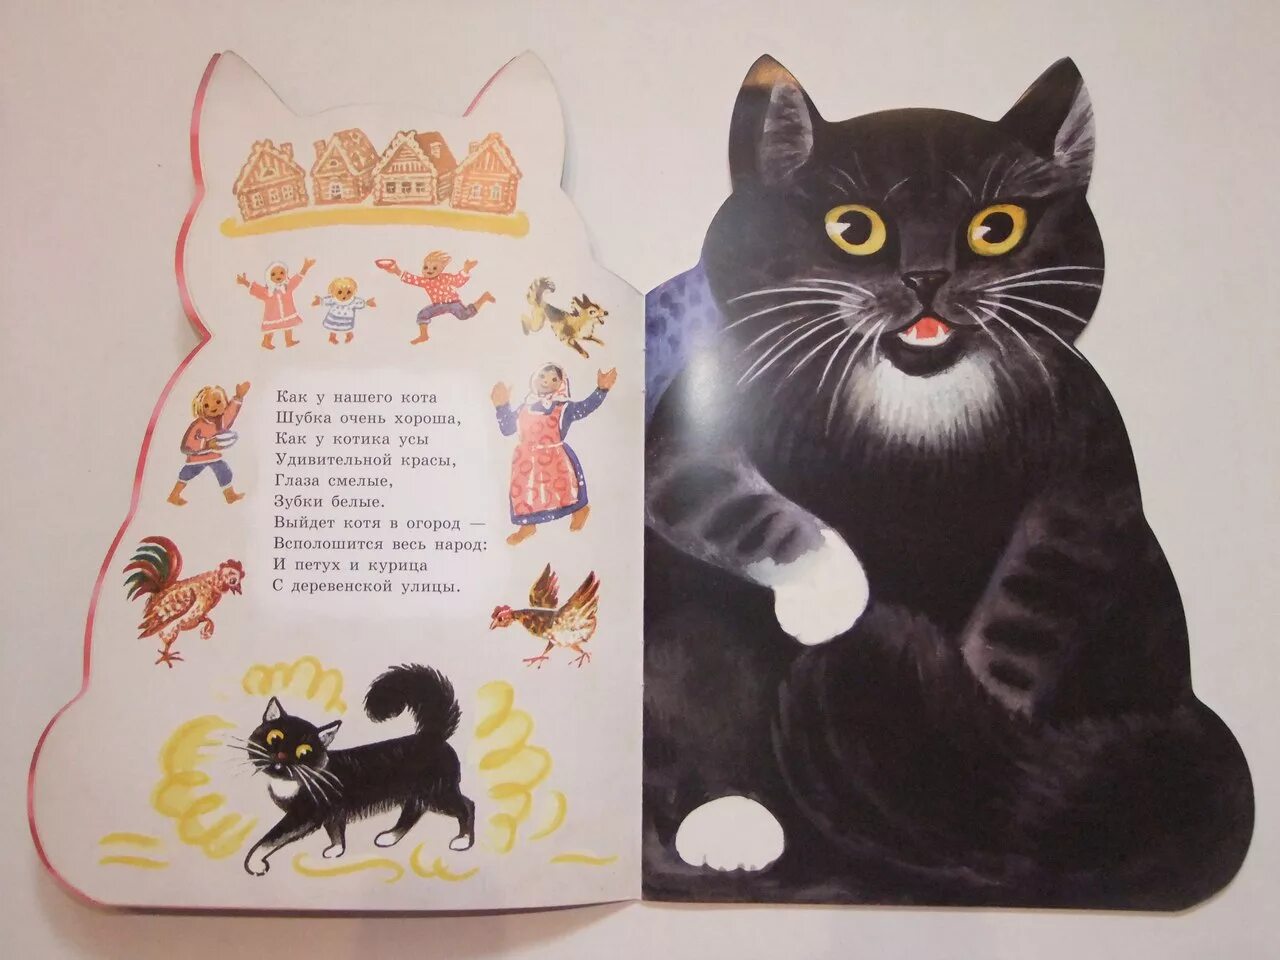 Мирная считалка. Произведения о котах. Книжки про котиков. Книги о котах и кошках для детей. Стих про кошку для детей.